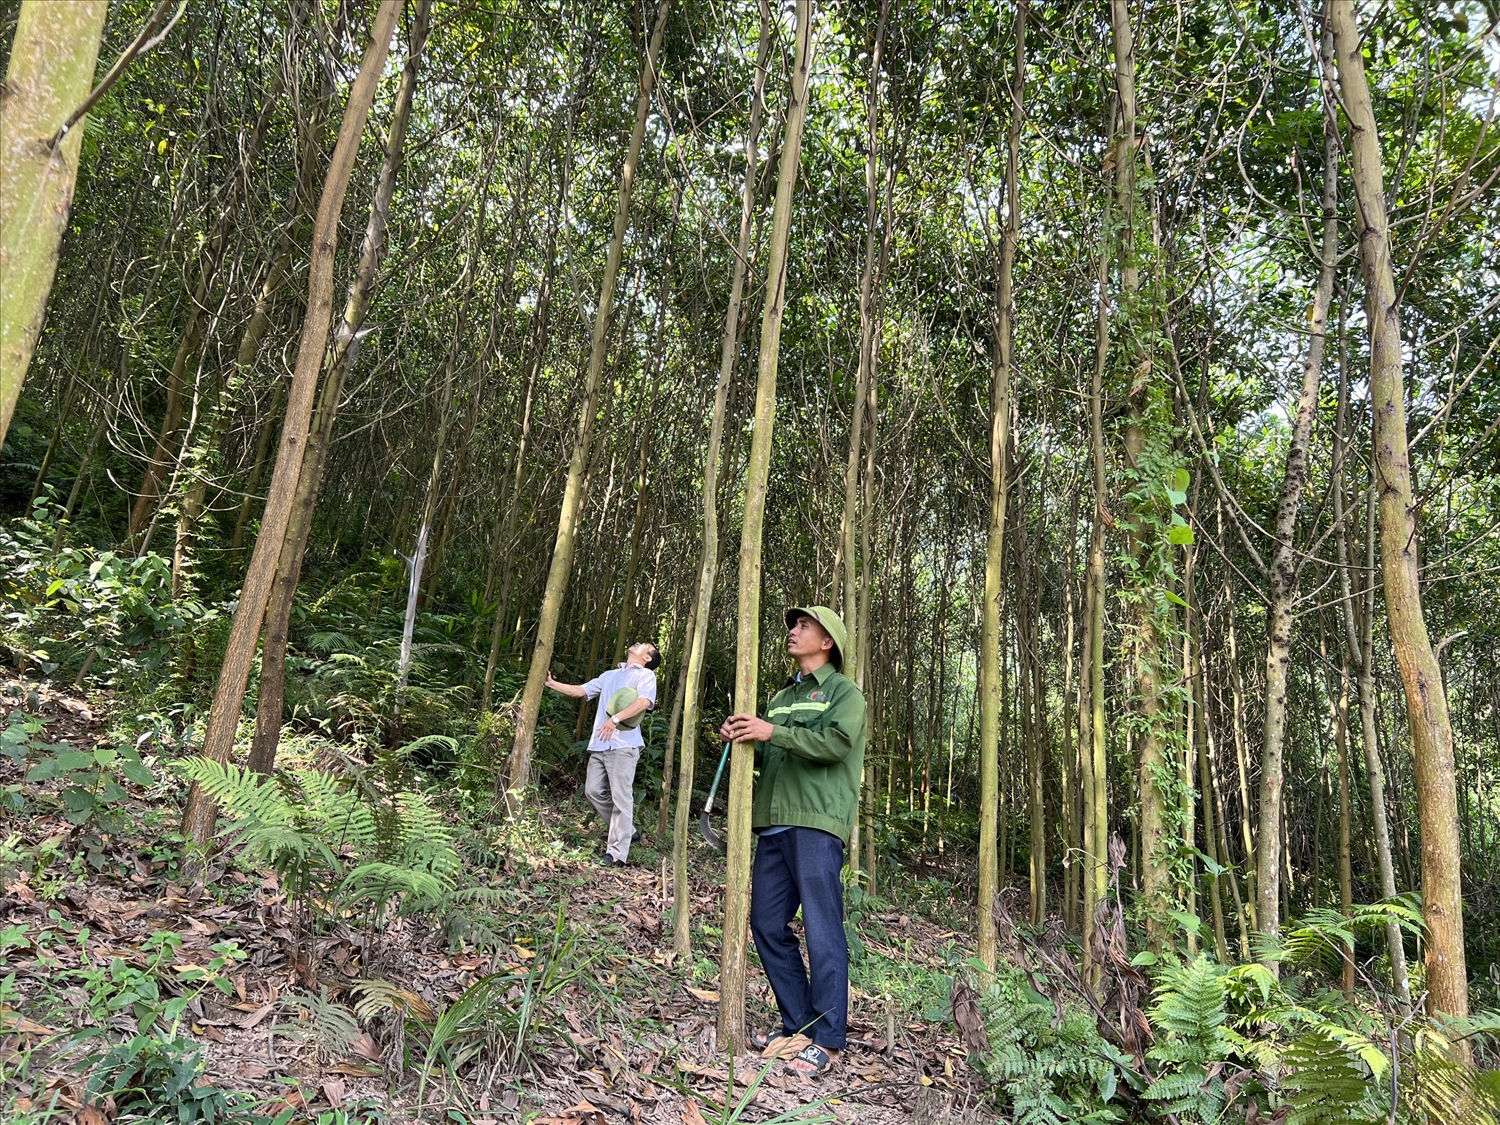 Trưởng thôn Sầm Văn Páo (người đội mũ) bên vườn rừng